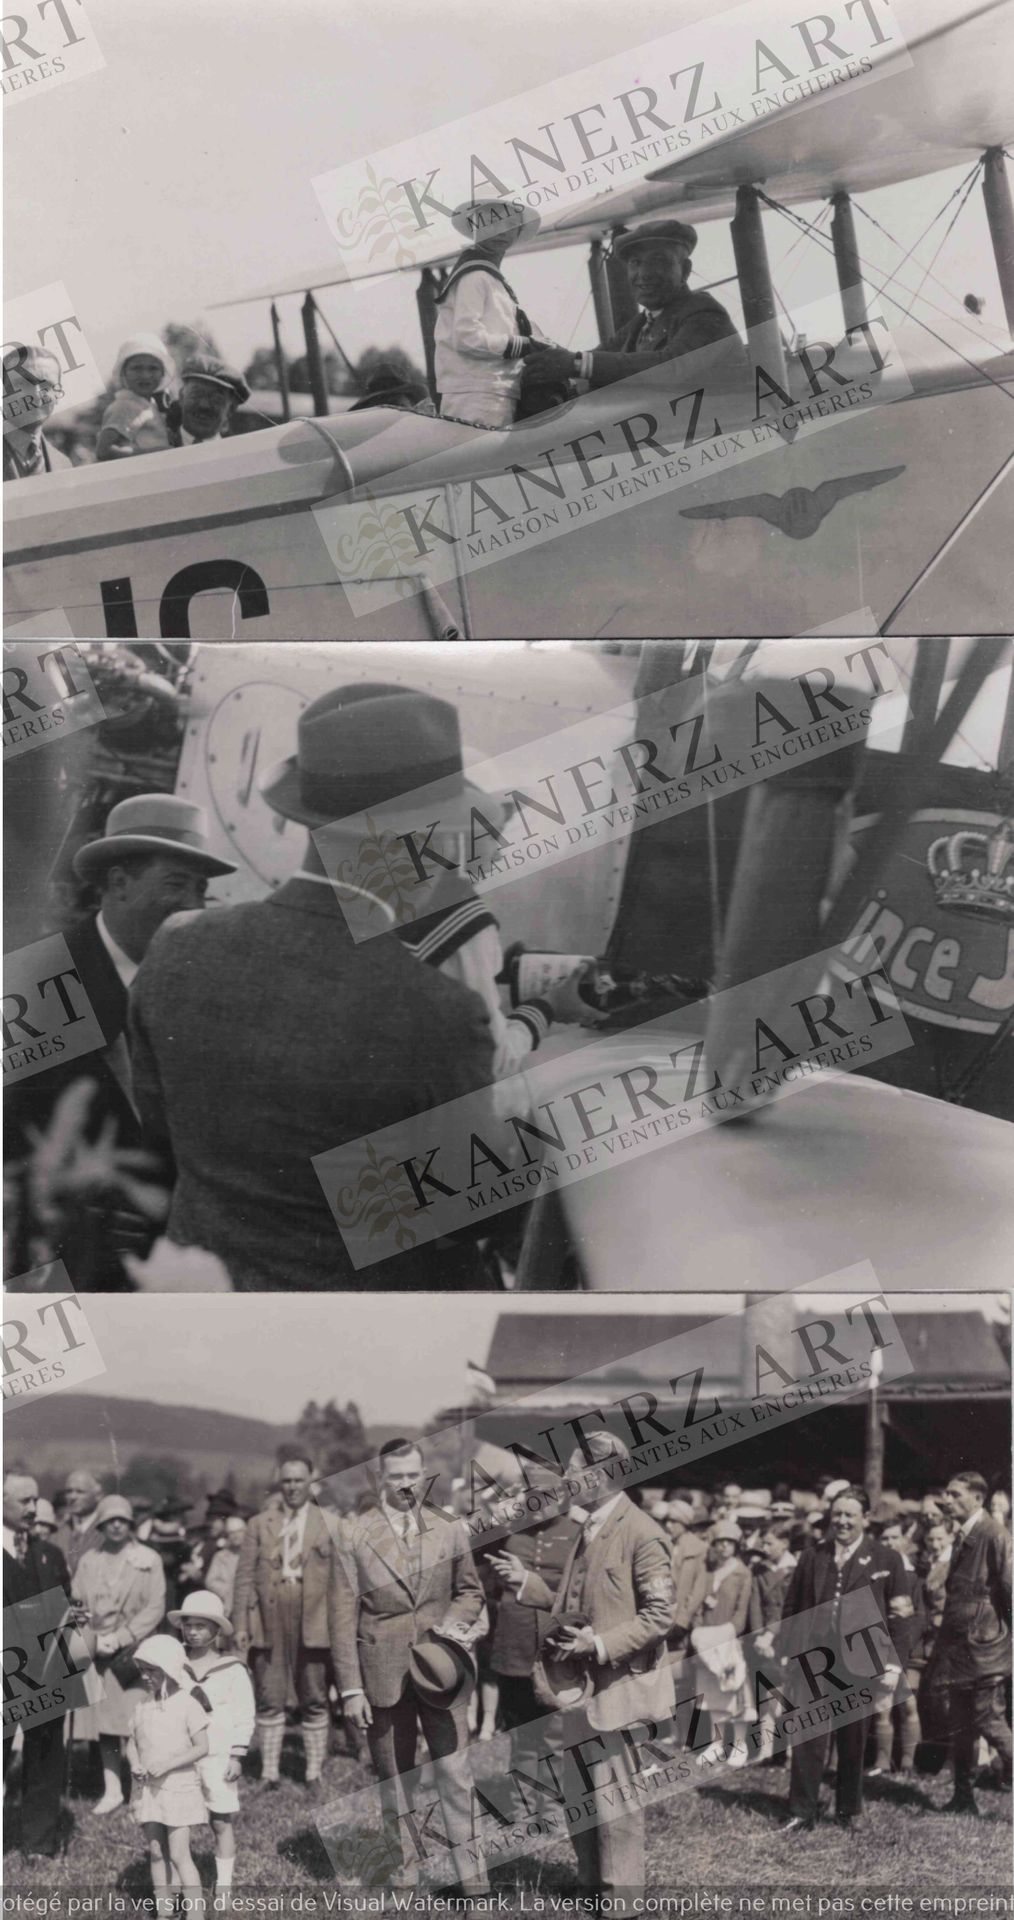 Null (航空)一套3张照片：费利克斯王子出席的航空会议，让王子爬上同名飞机，摄影师是格雷文马赫的施瓦茨，20世纪20年代末。